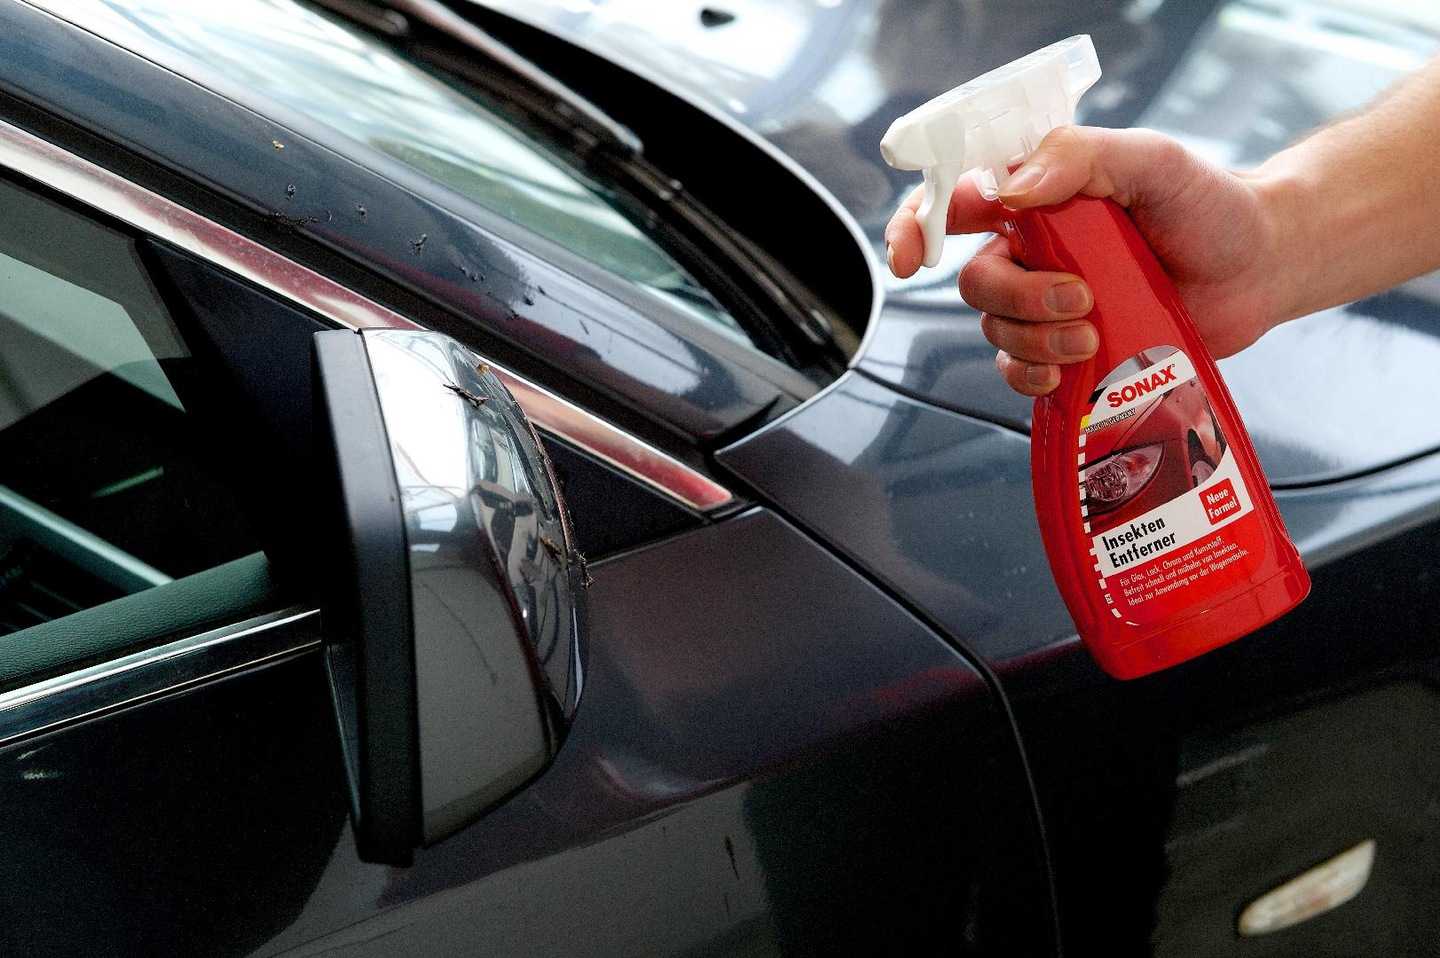 Уход за автомобилем: советы как мыть авто и чистить салон | avtomobilkredit.ru - все о покупке автомобиля в кредит